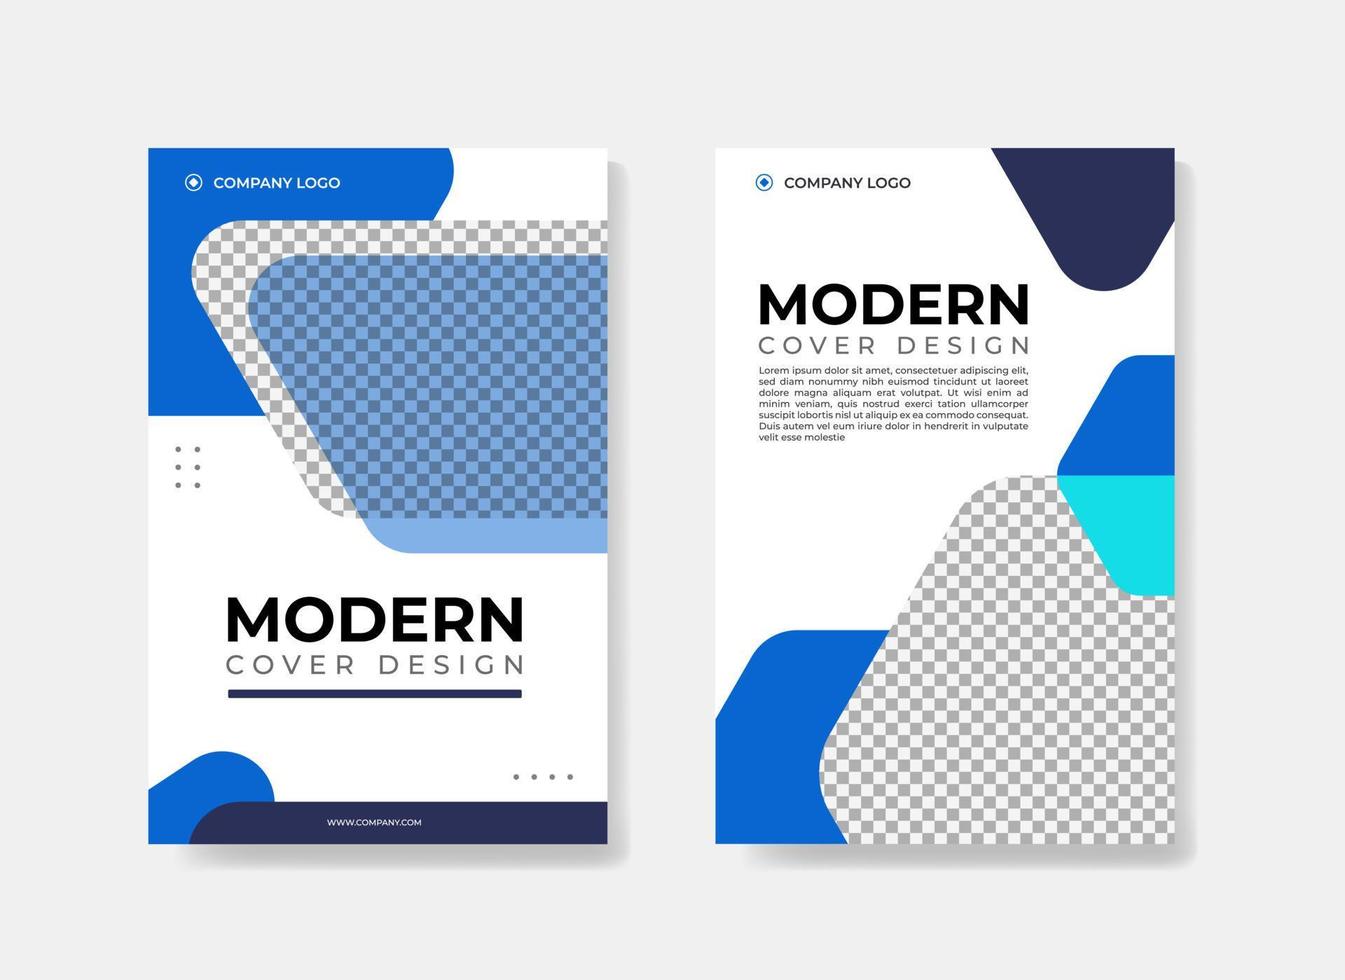 unternehmensmoderne cover-designvorlage mit blauer farbkombination vektor